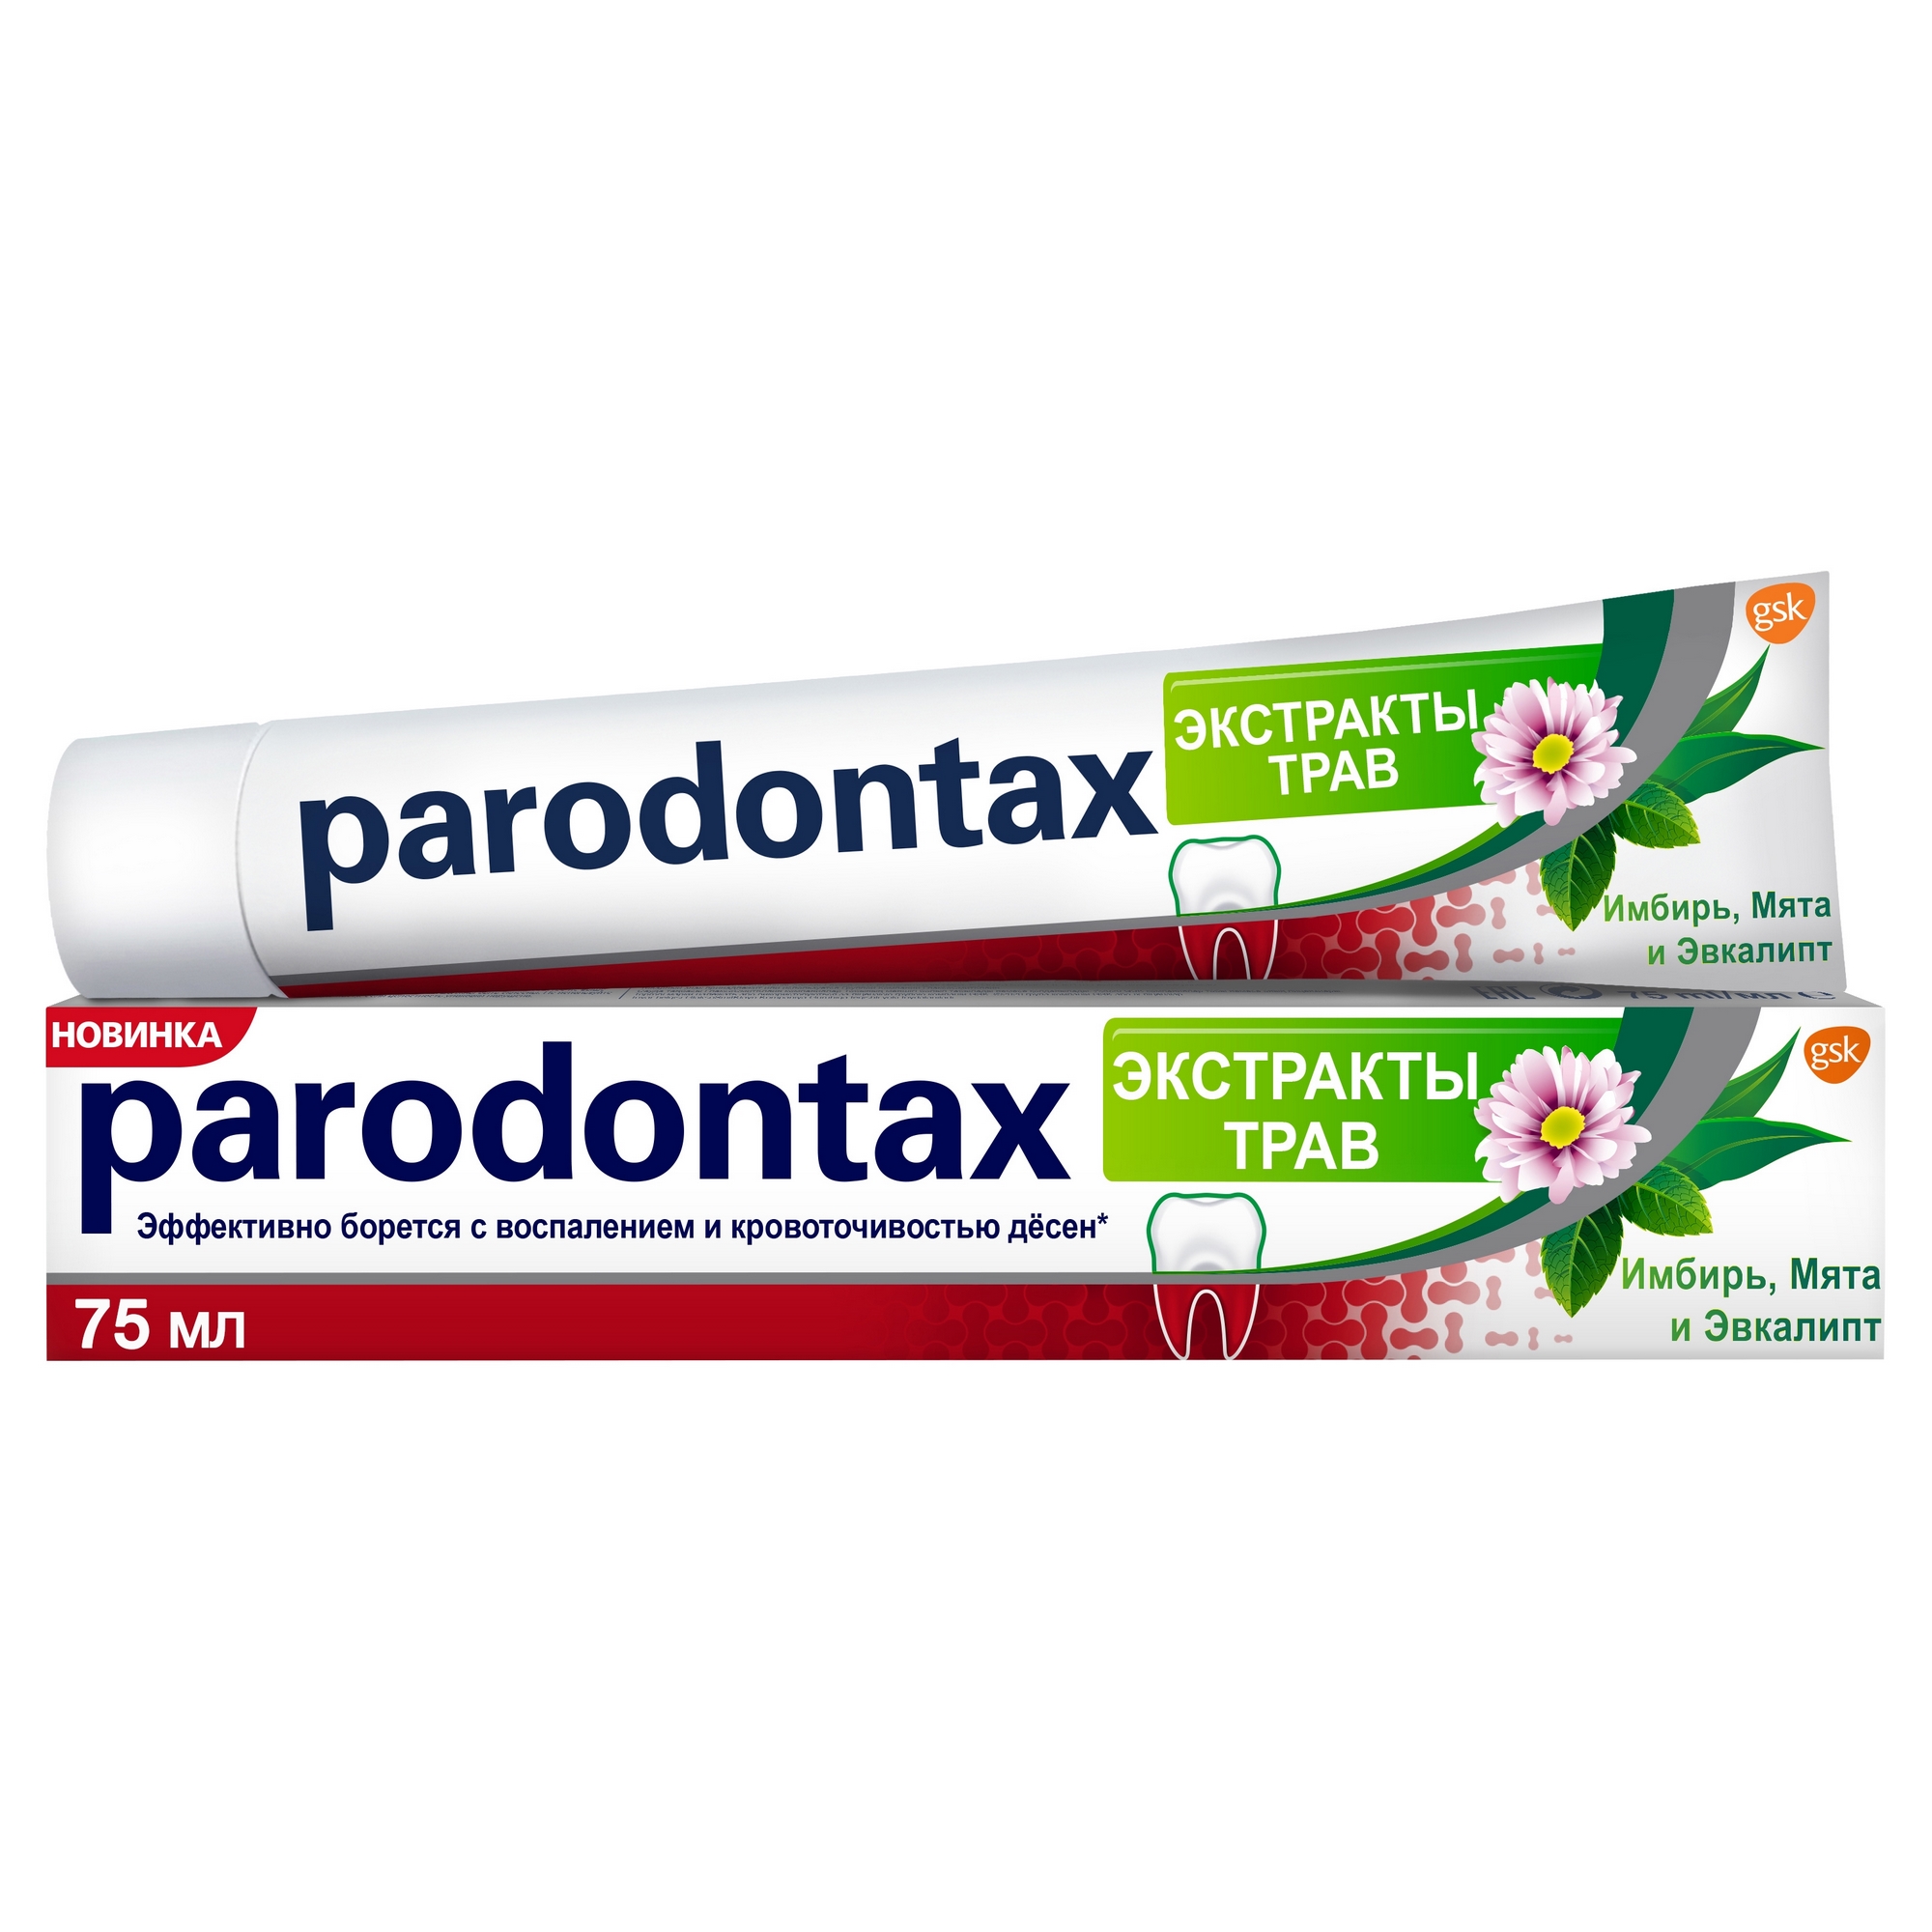 Зубная паста Parodontax Экстракты трав 75 мл паста зубная parodontax экстракты трав 50 мл